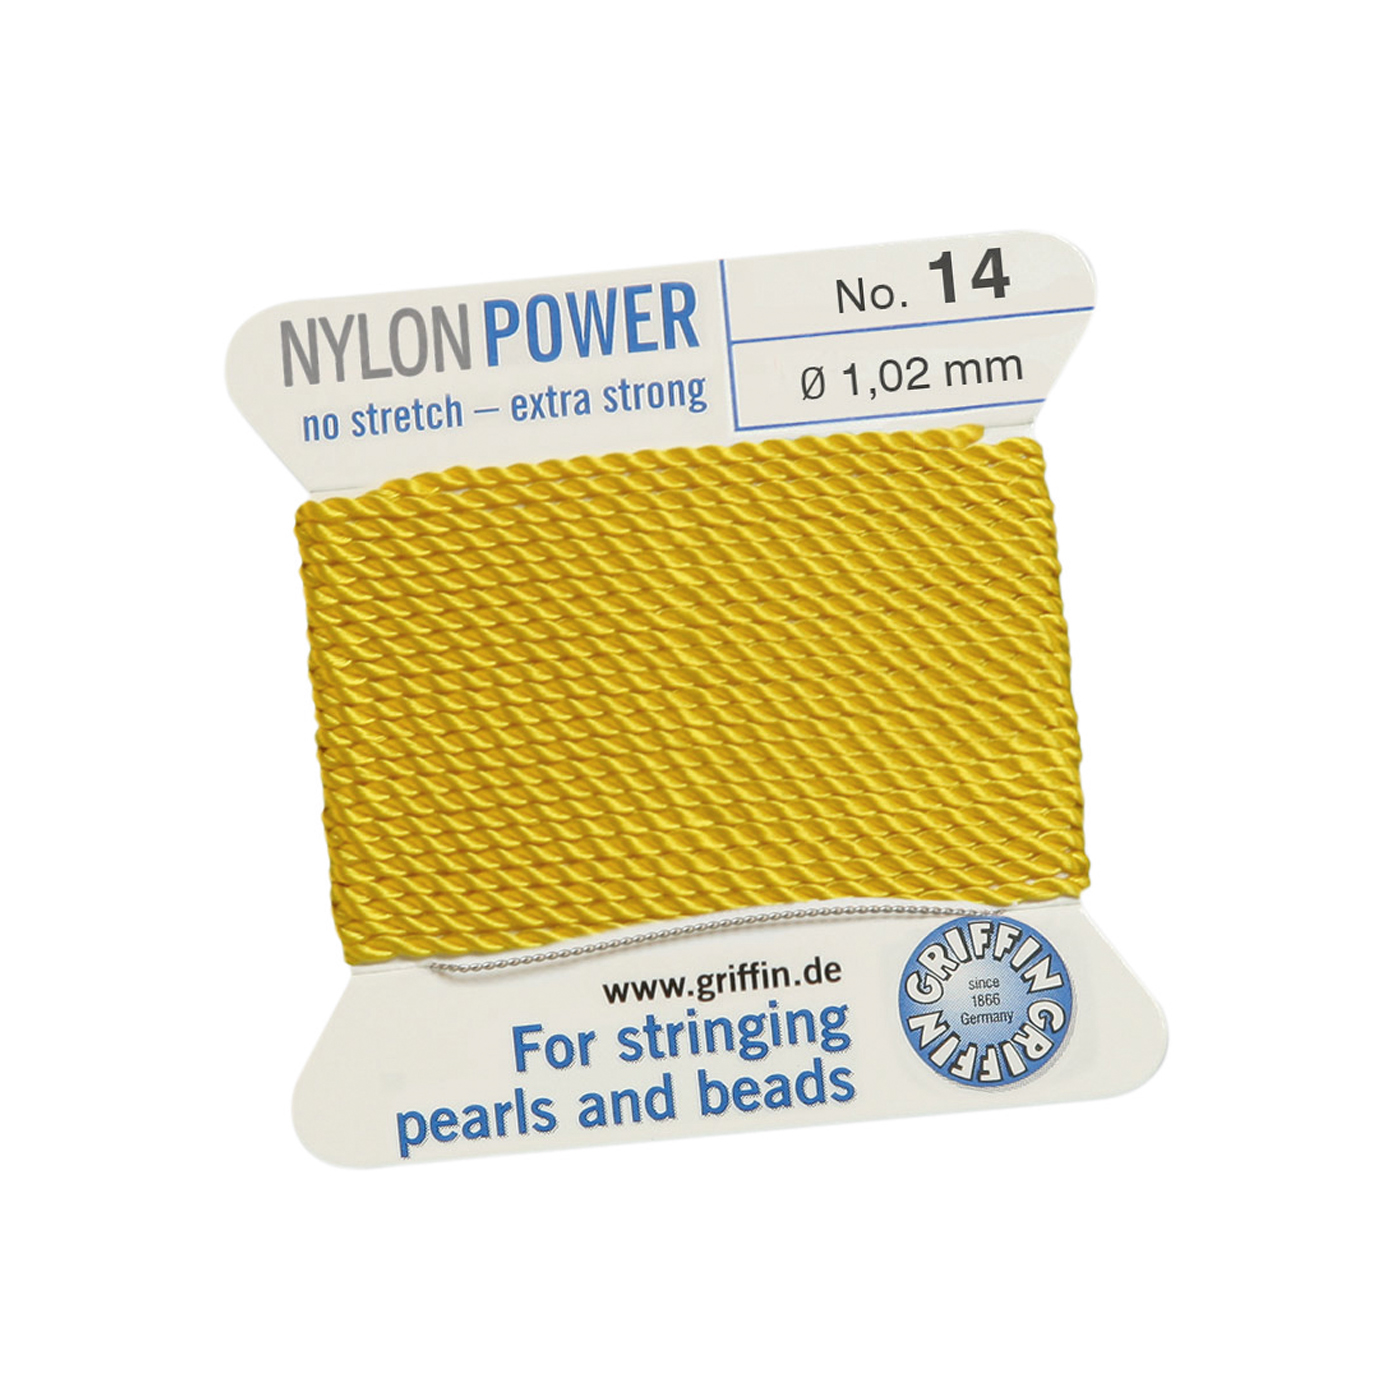 Bead Cord NylonPower, Light Yellow, No. 14 - 2 m